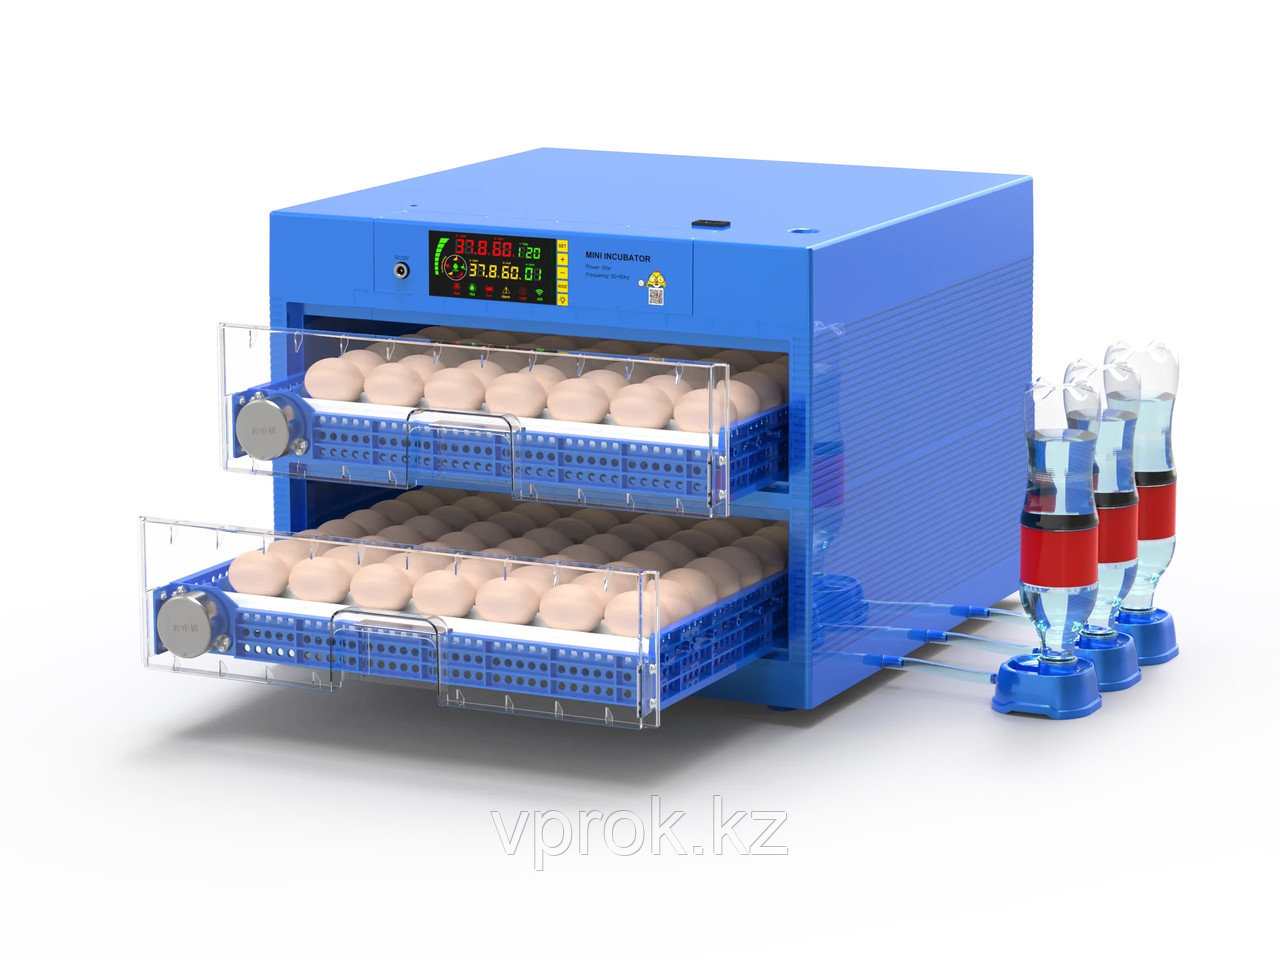 Инкубатор "Сhicken 128" на 128 яйц с функцией автоматического пополнения воды и регулировкой роликов